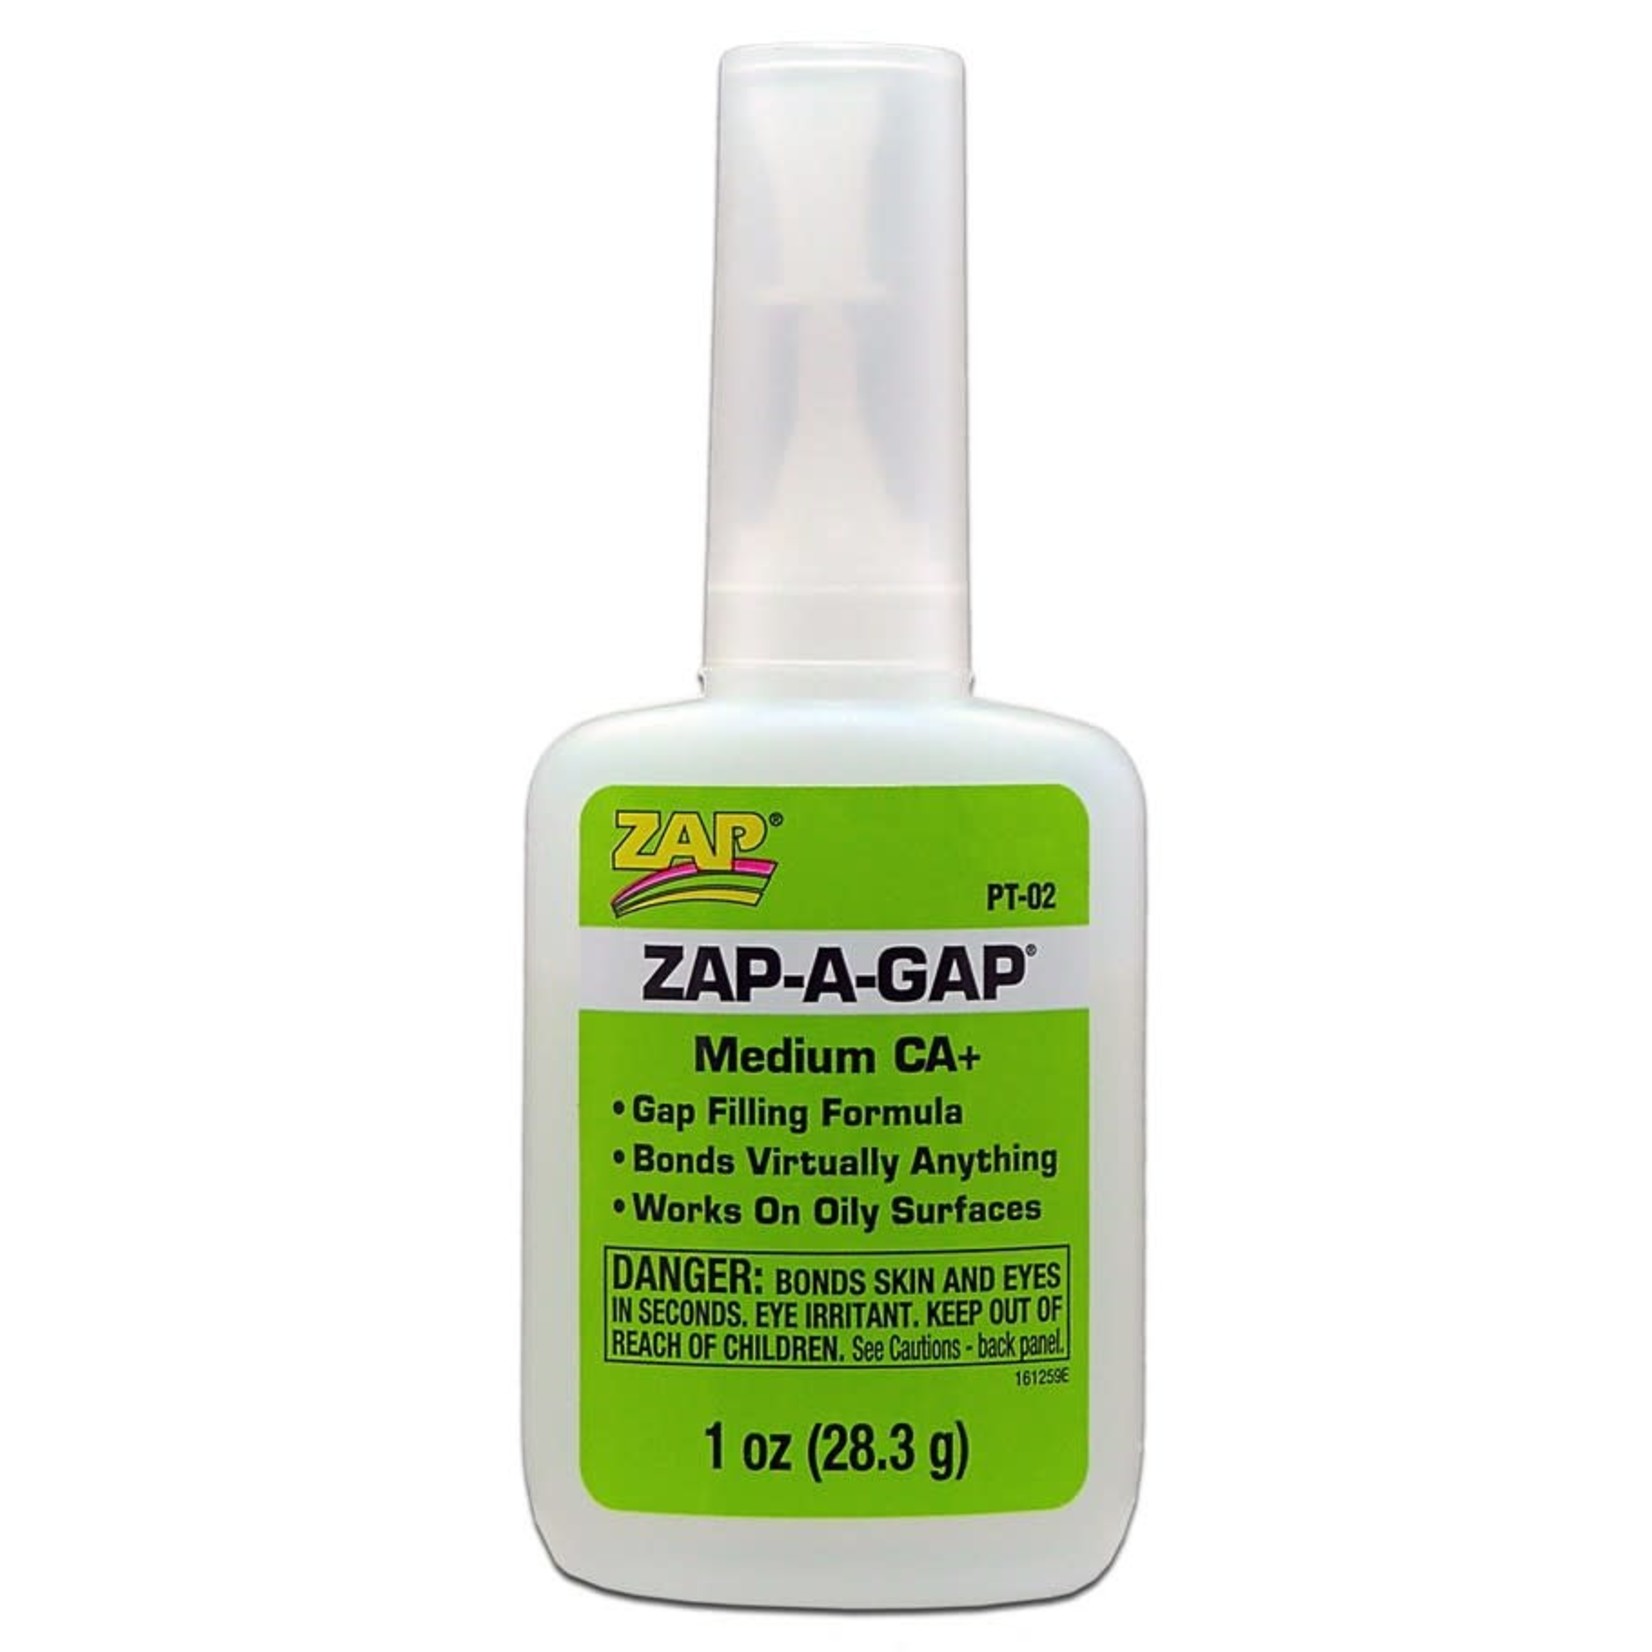 Zap Glue Zap-a-gap Medium CA Super Glue 1 oz